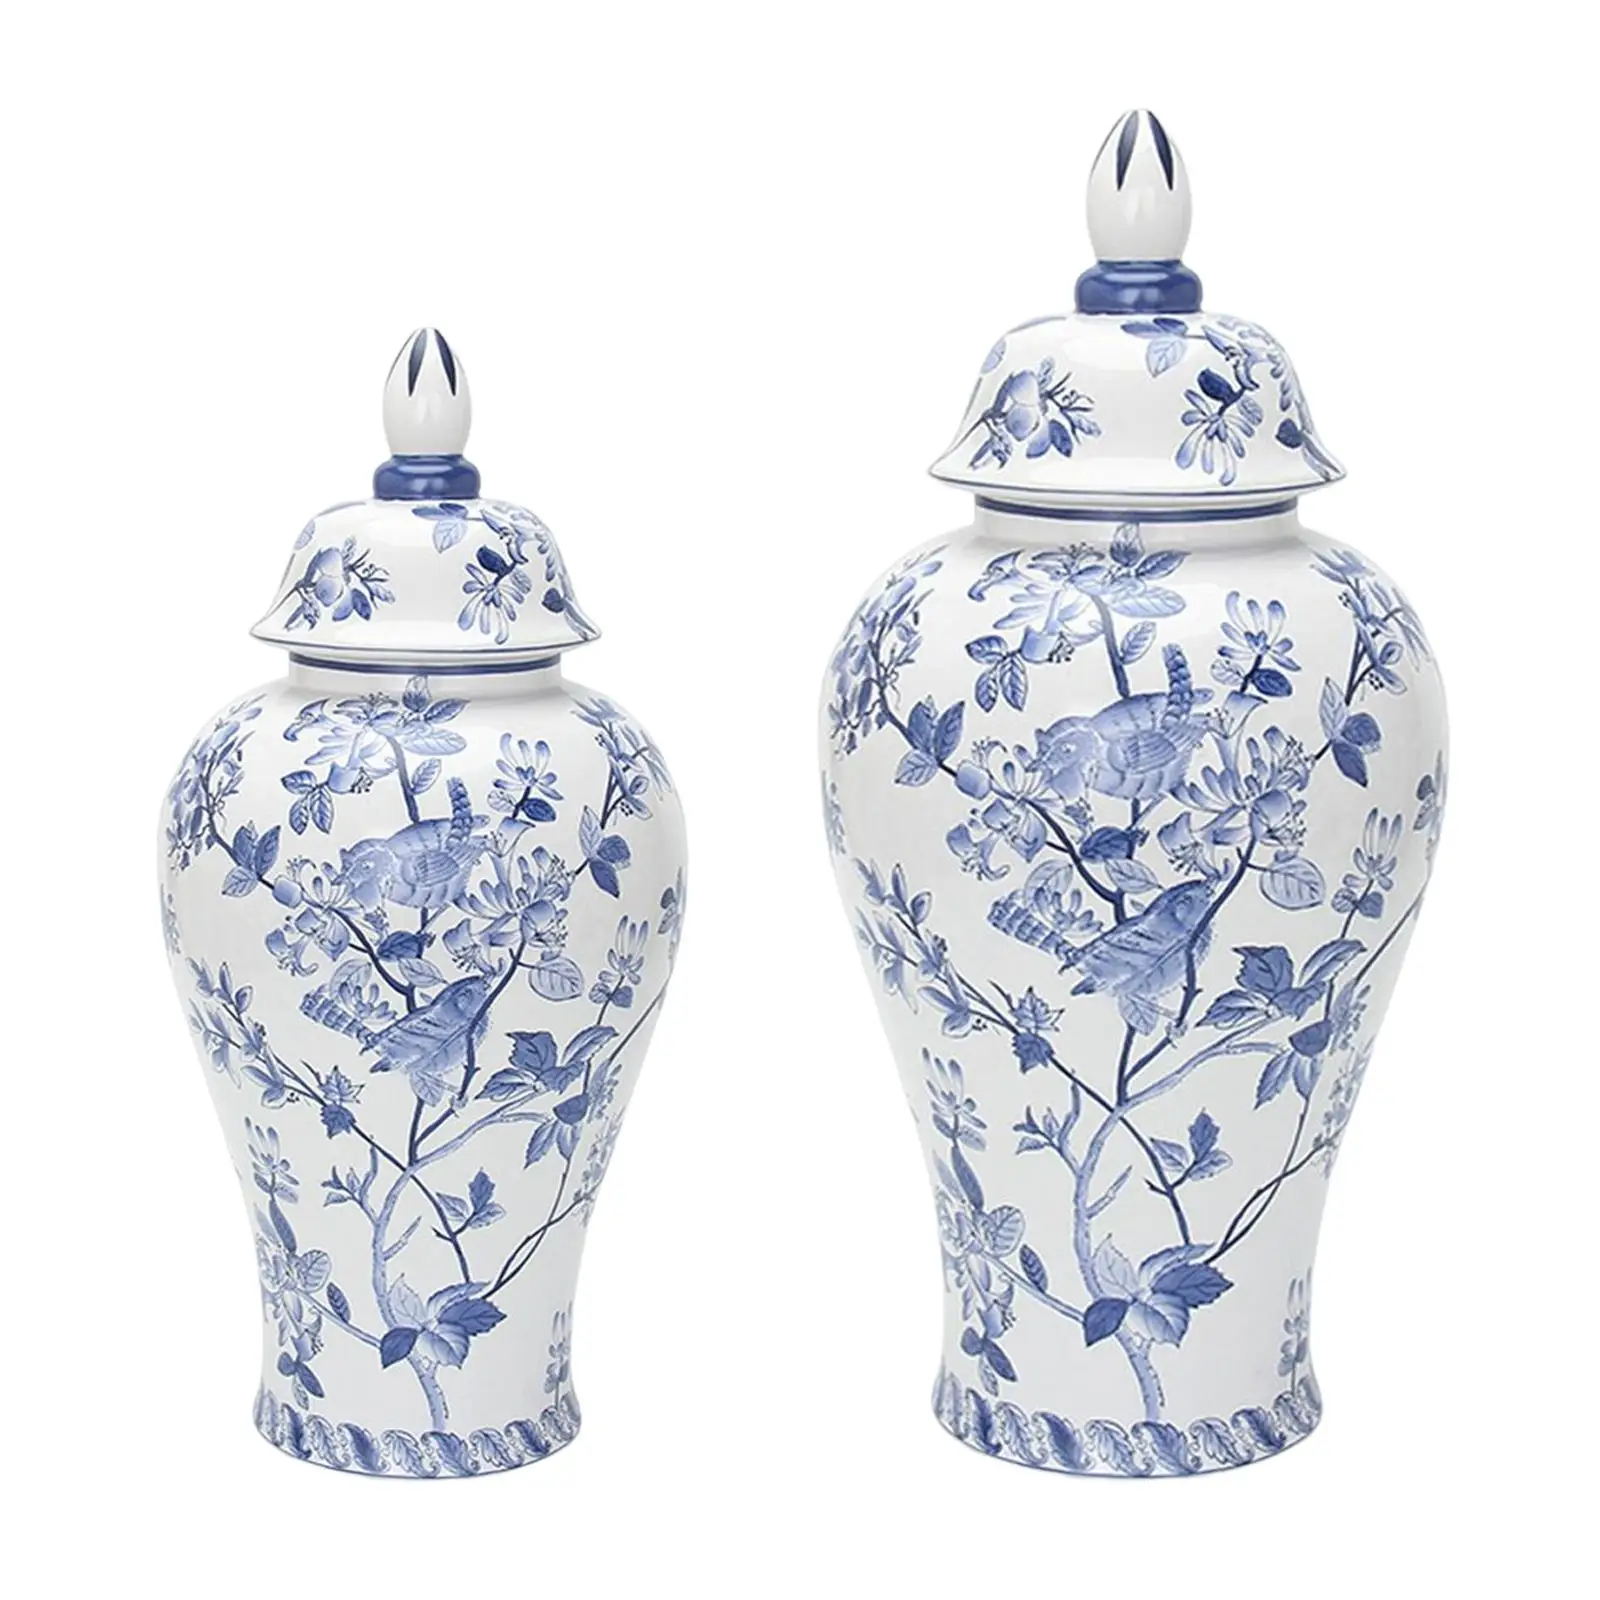 Ceramic Flower Vase Display Glaze Decorative Porcelain Ginger Jar for Home